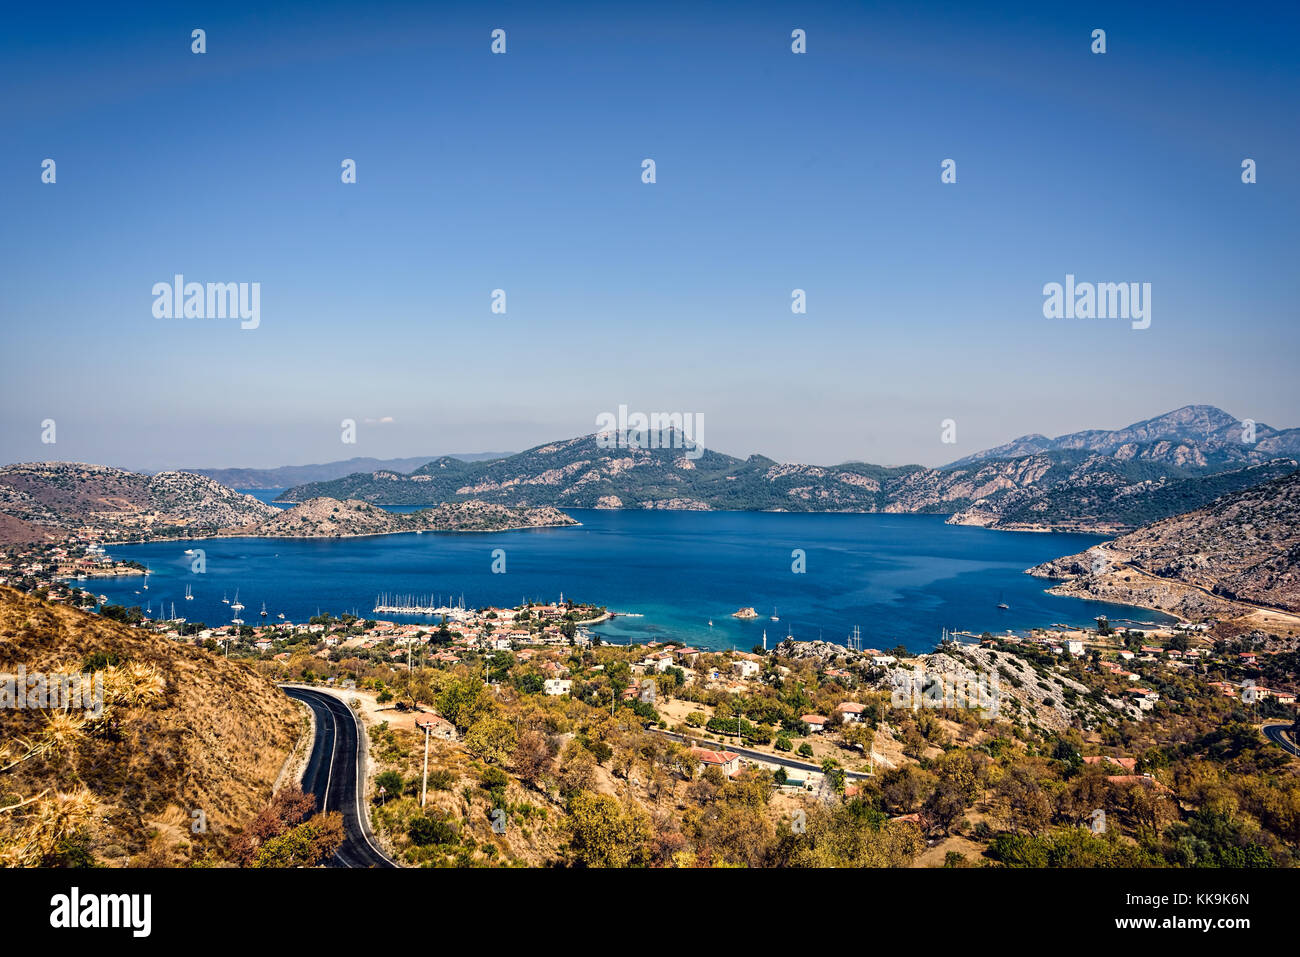 Vista von selimiye unter azurblauem Himmel, Halbinsel Bozburun, Marmaris, Mugla, Türkei Stockfoto